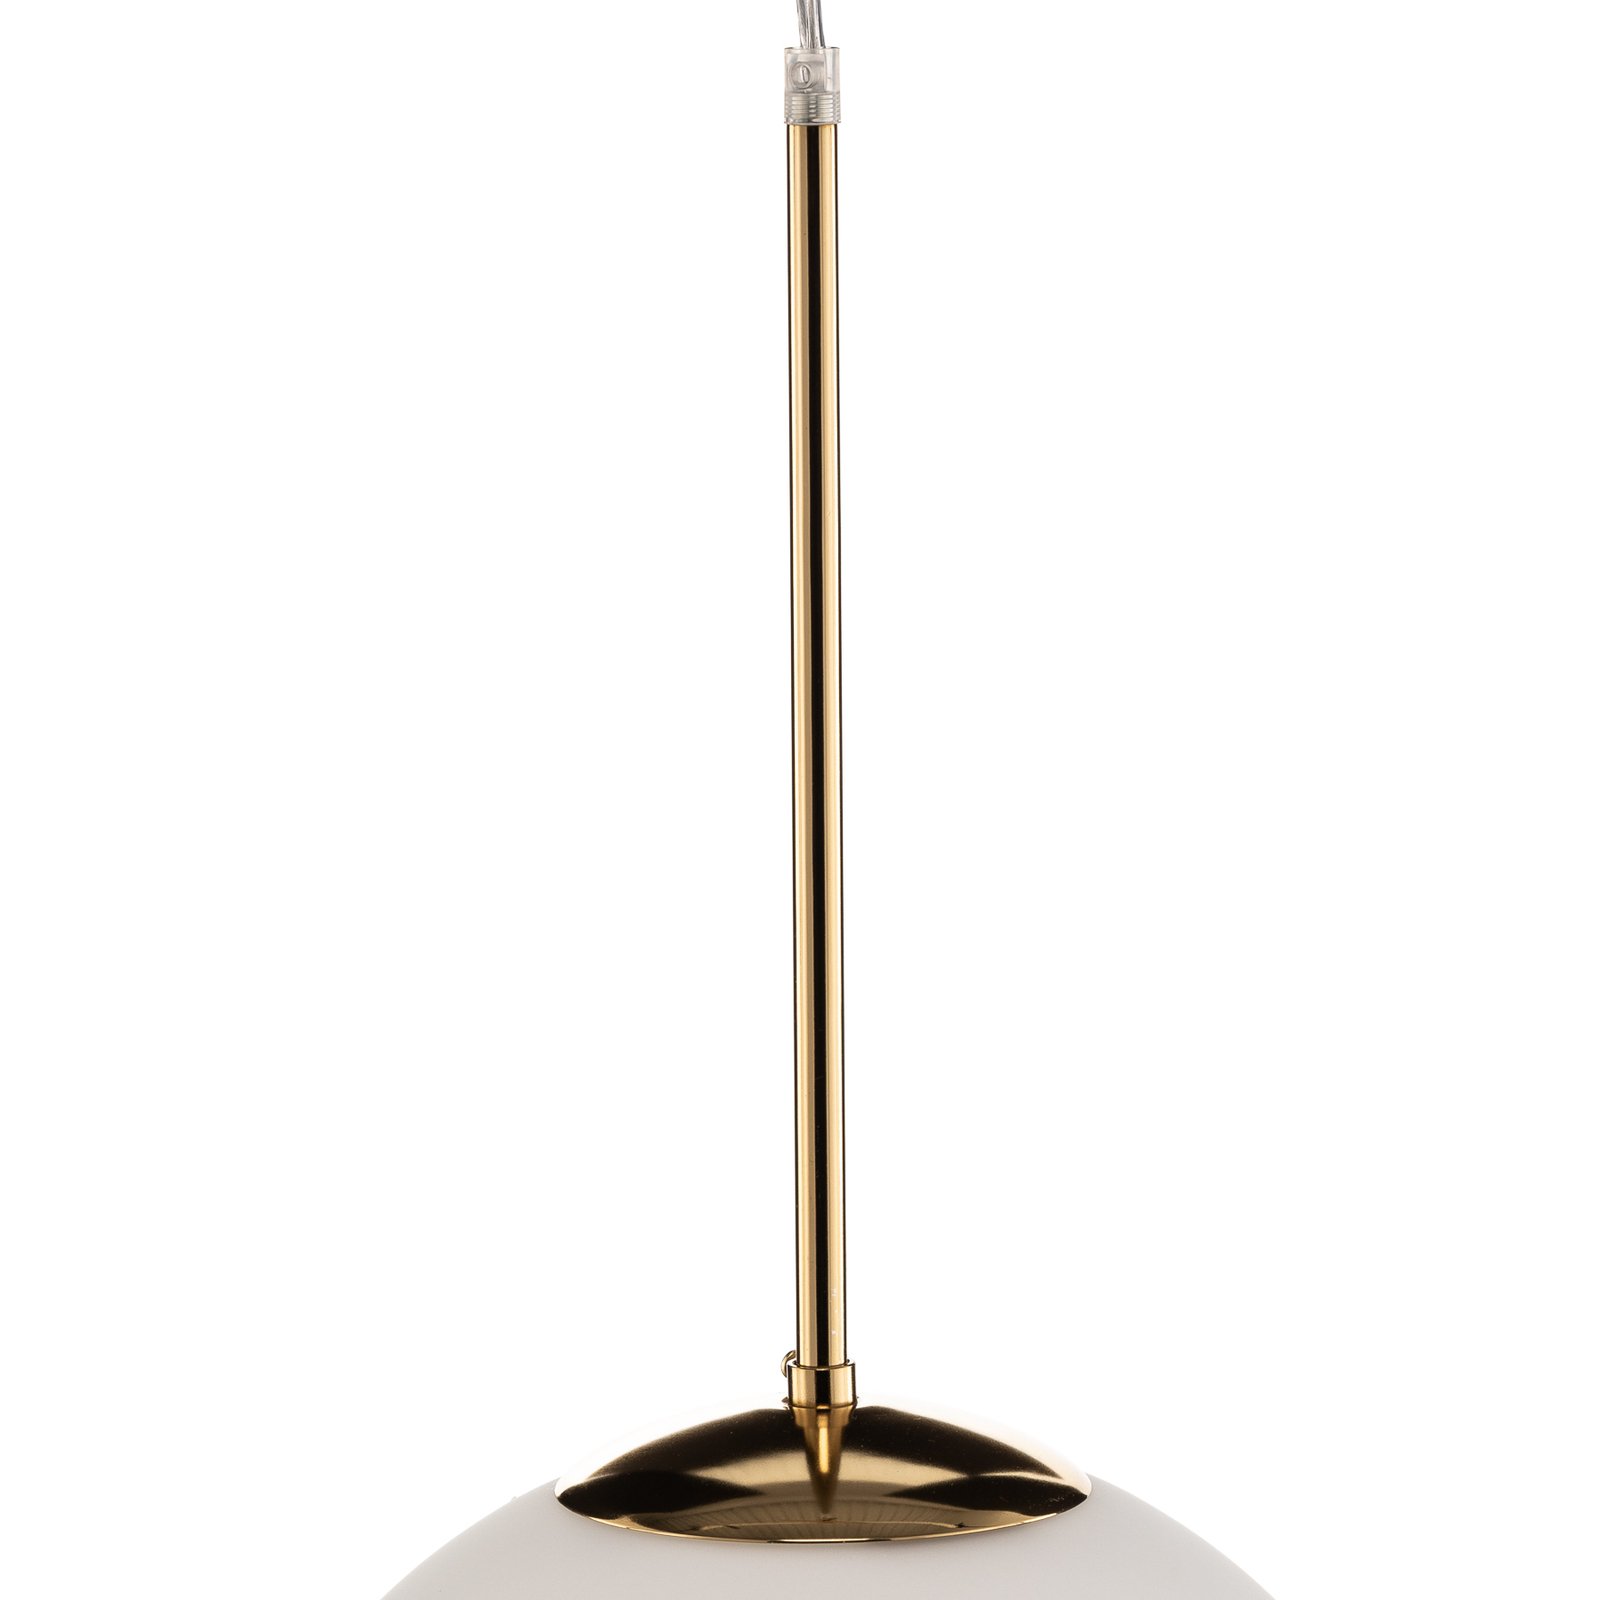 Lámpara colgante Bosso, 1 luz, blanca/oro 30cm